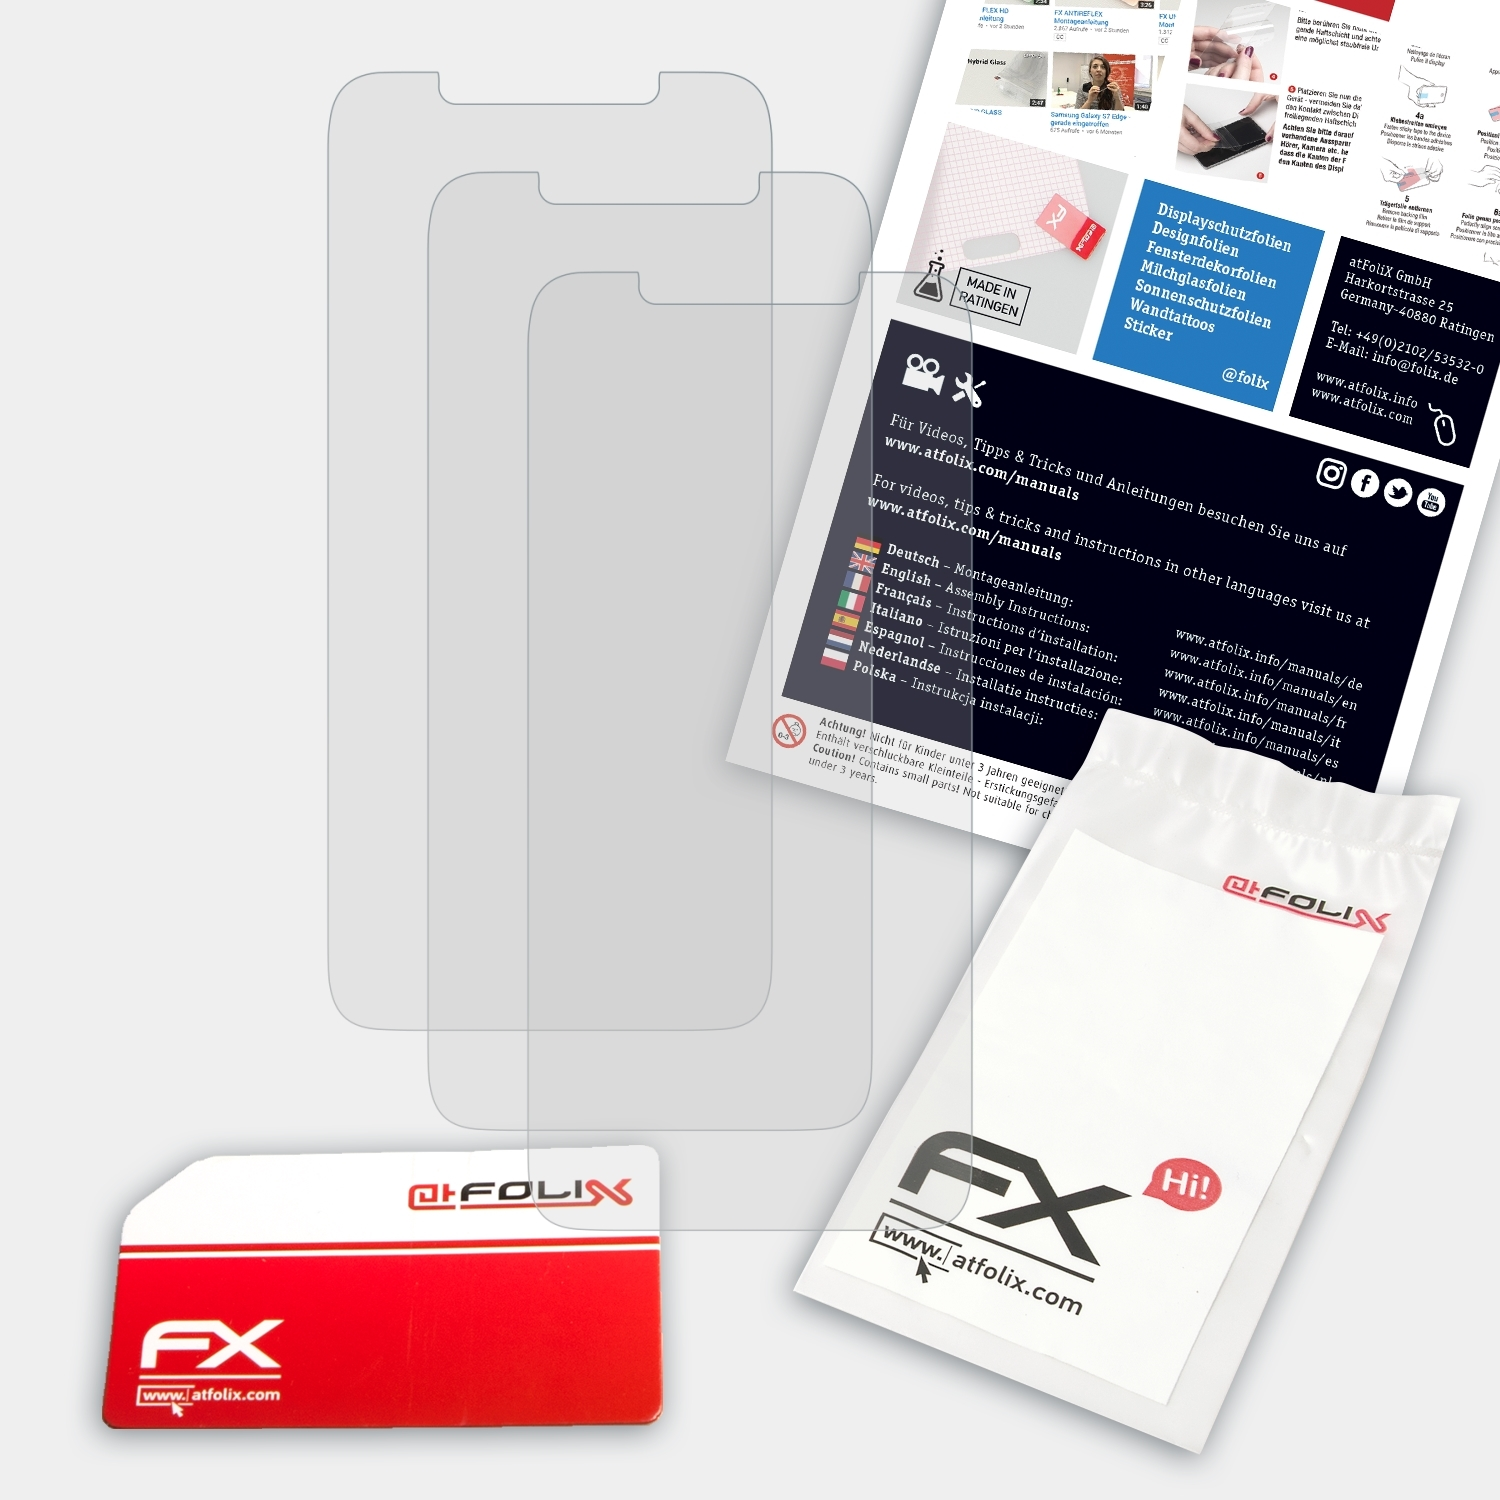 ATFOLIX 3x FX-Antireflex Displayschutz(für S5 Pro) Lenovo